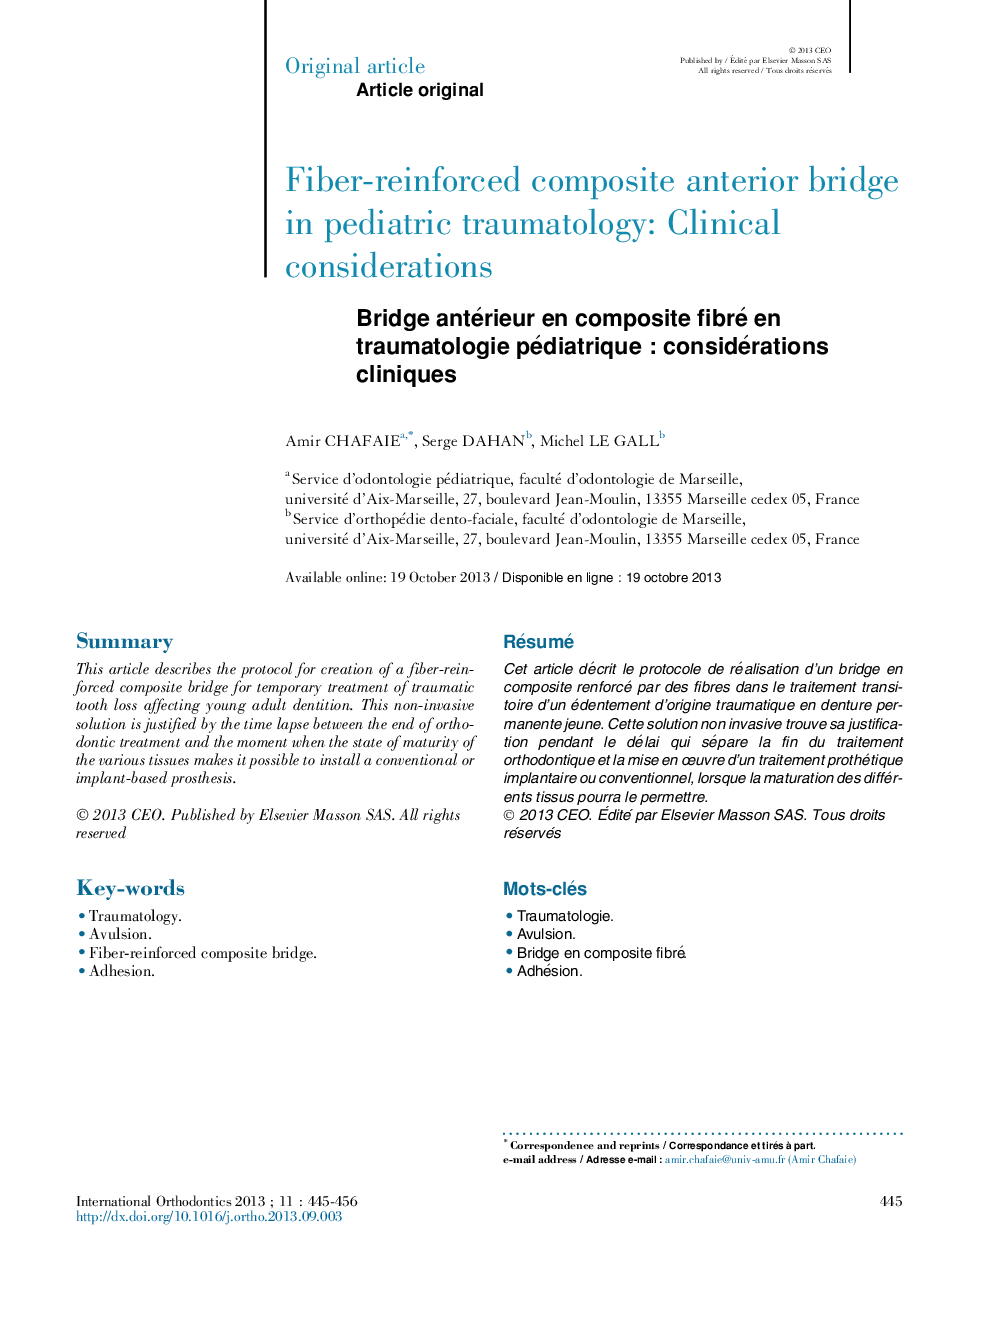 Bridge antérieur en composite fibré en traumatologie pédiatriqueÂ : considérations cliniques